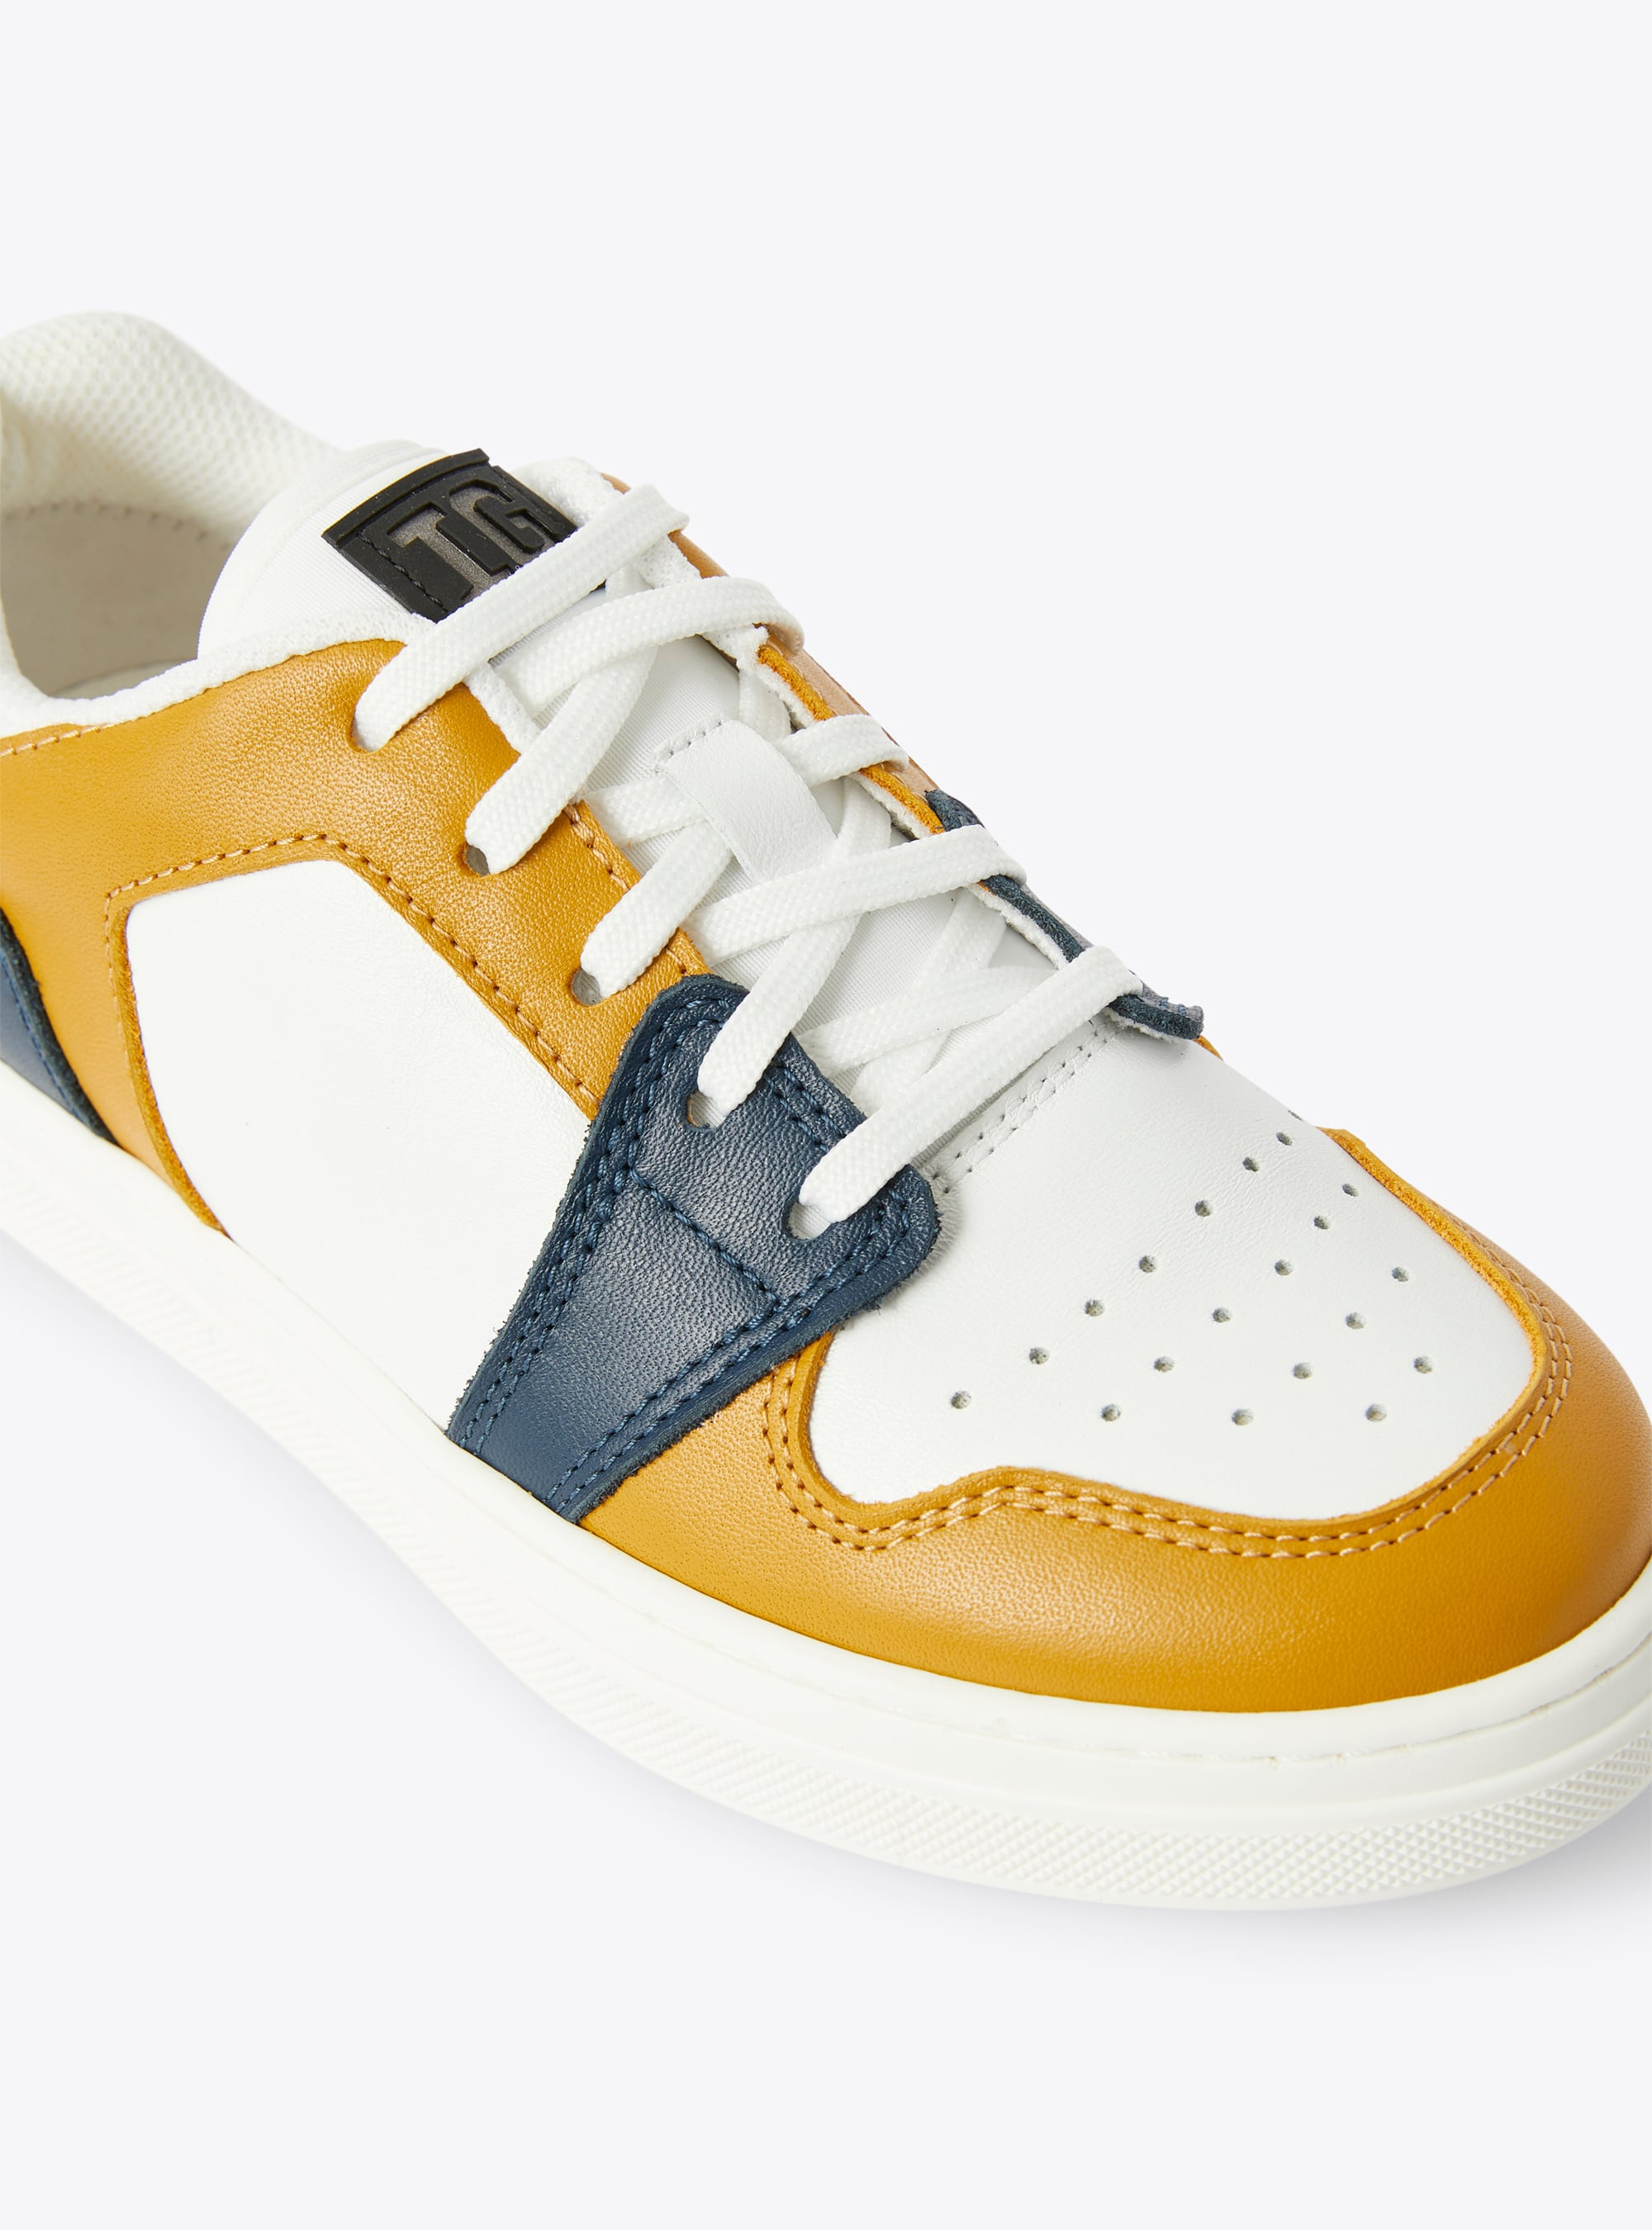 Sneakers basses IG bicolores cannelle et bleu - Orange | Il Gufo